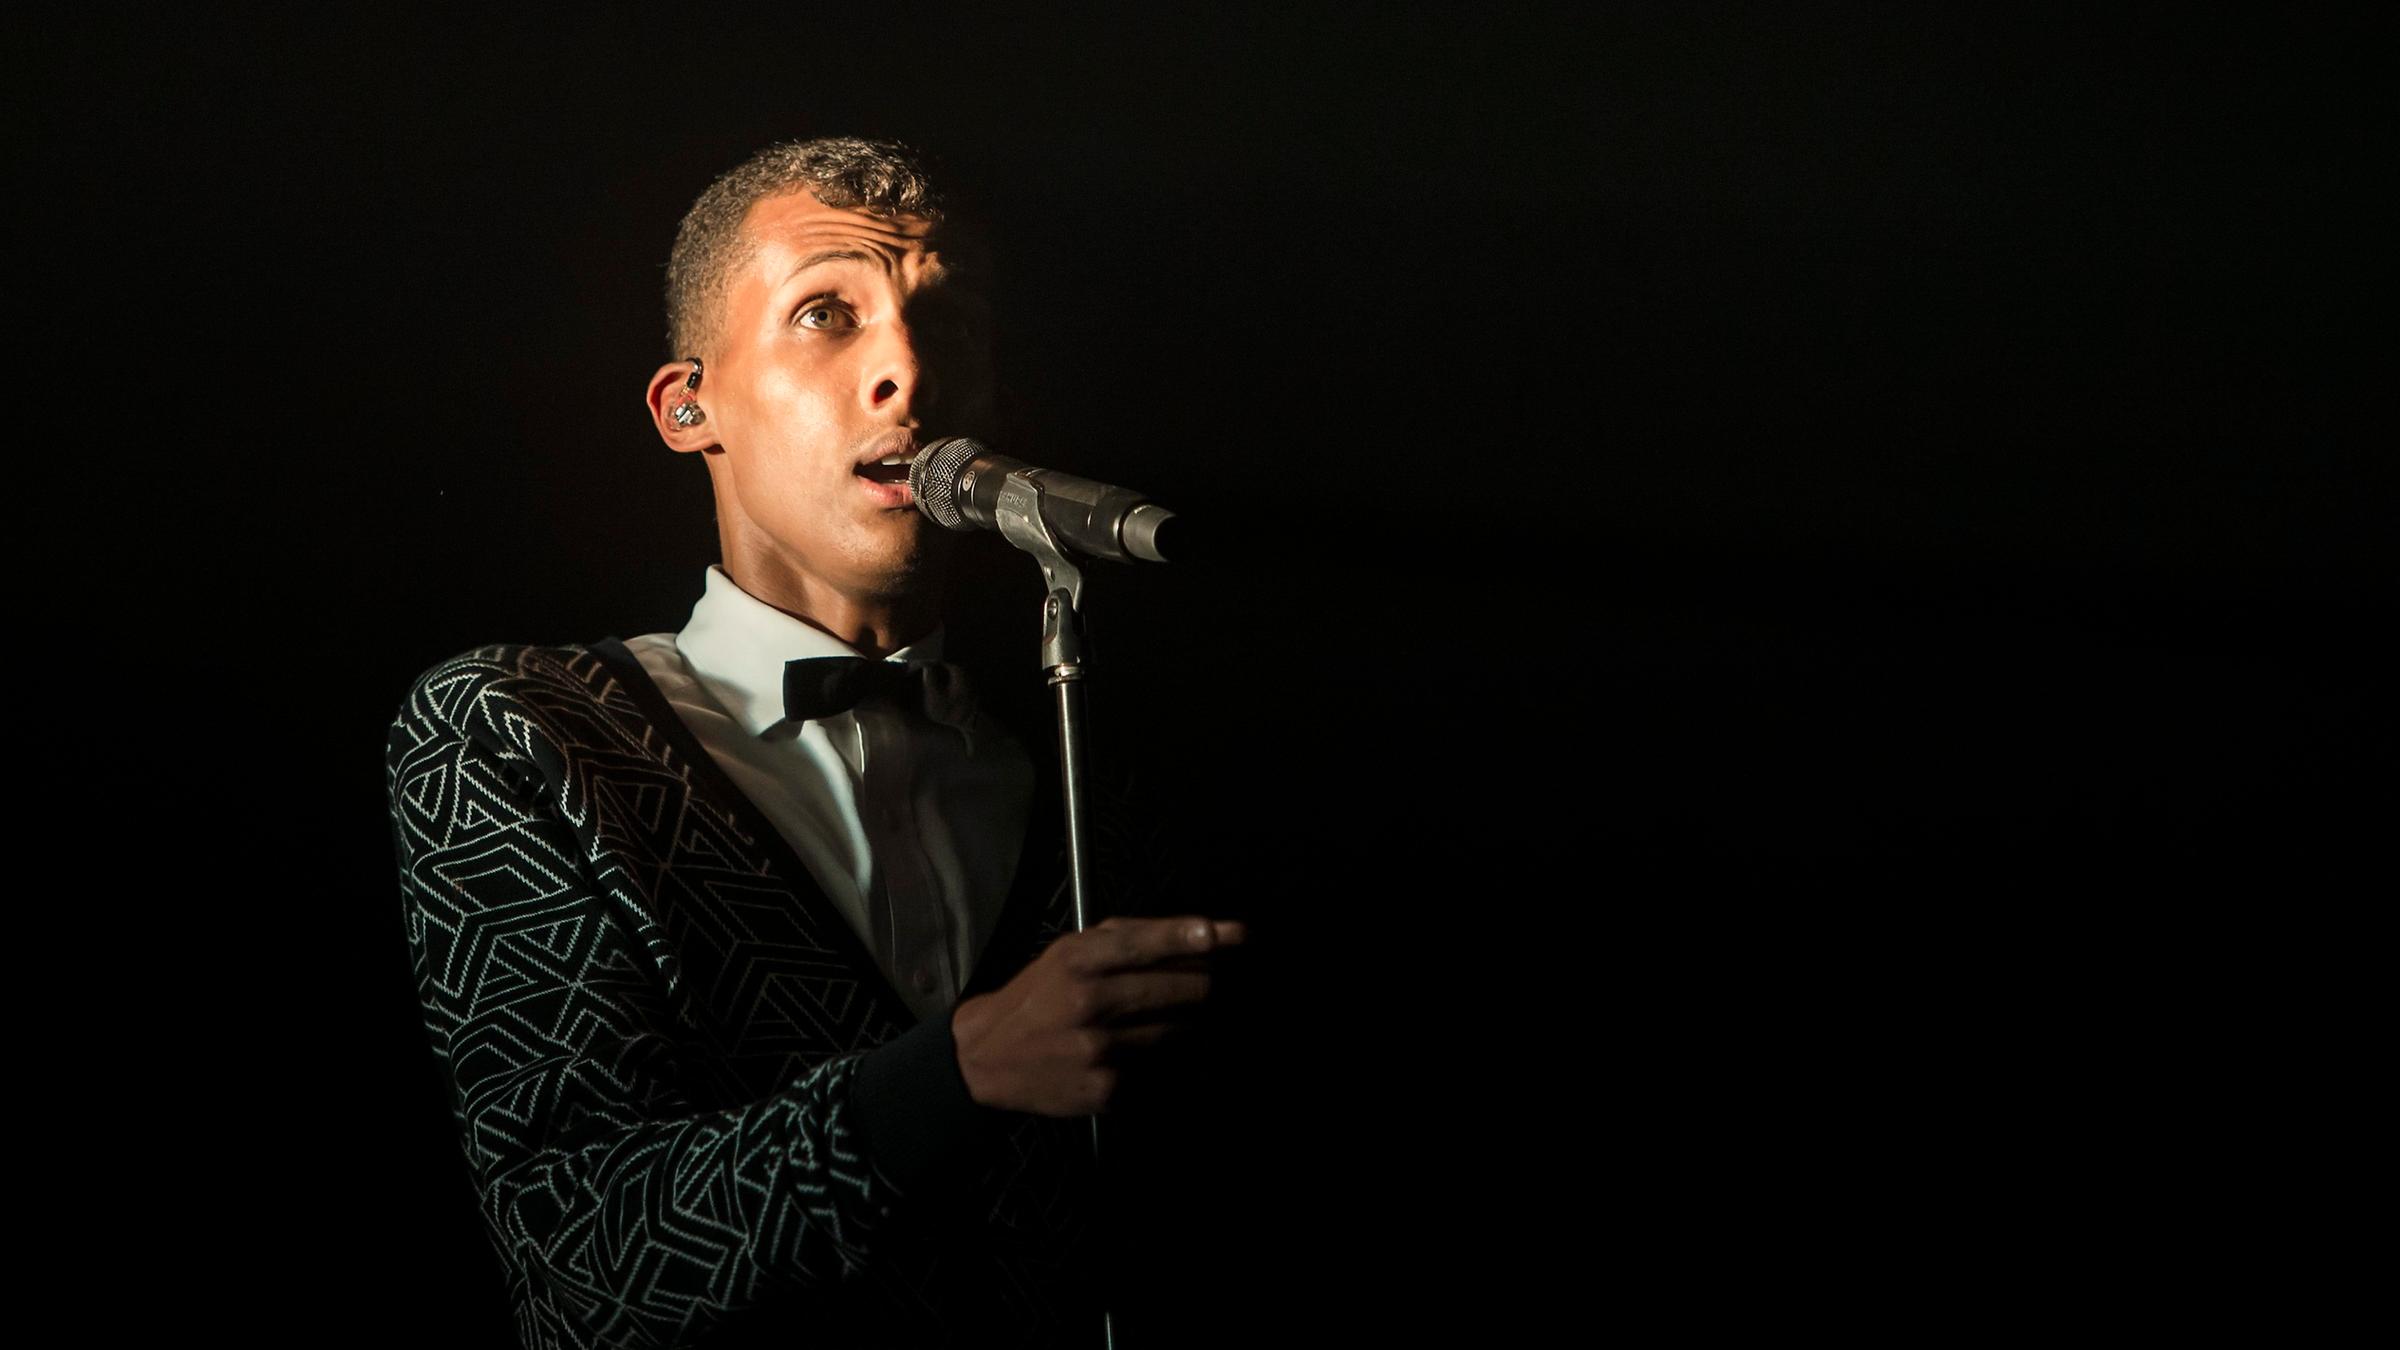 Der Sänger Stromae bei einem Konzert 2014: Er steht vor einem Mikro, de...</p>

                        <a href=